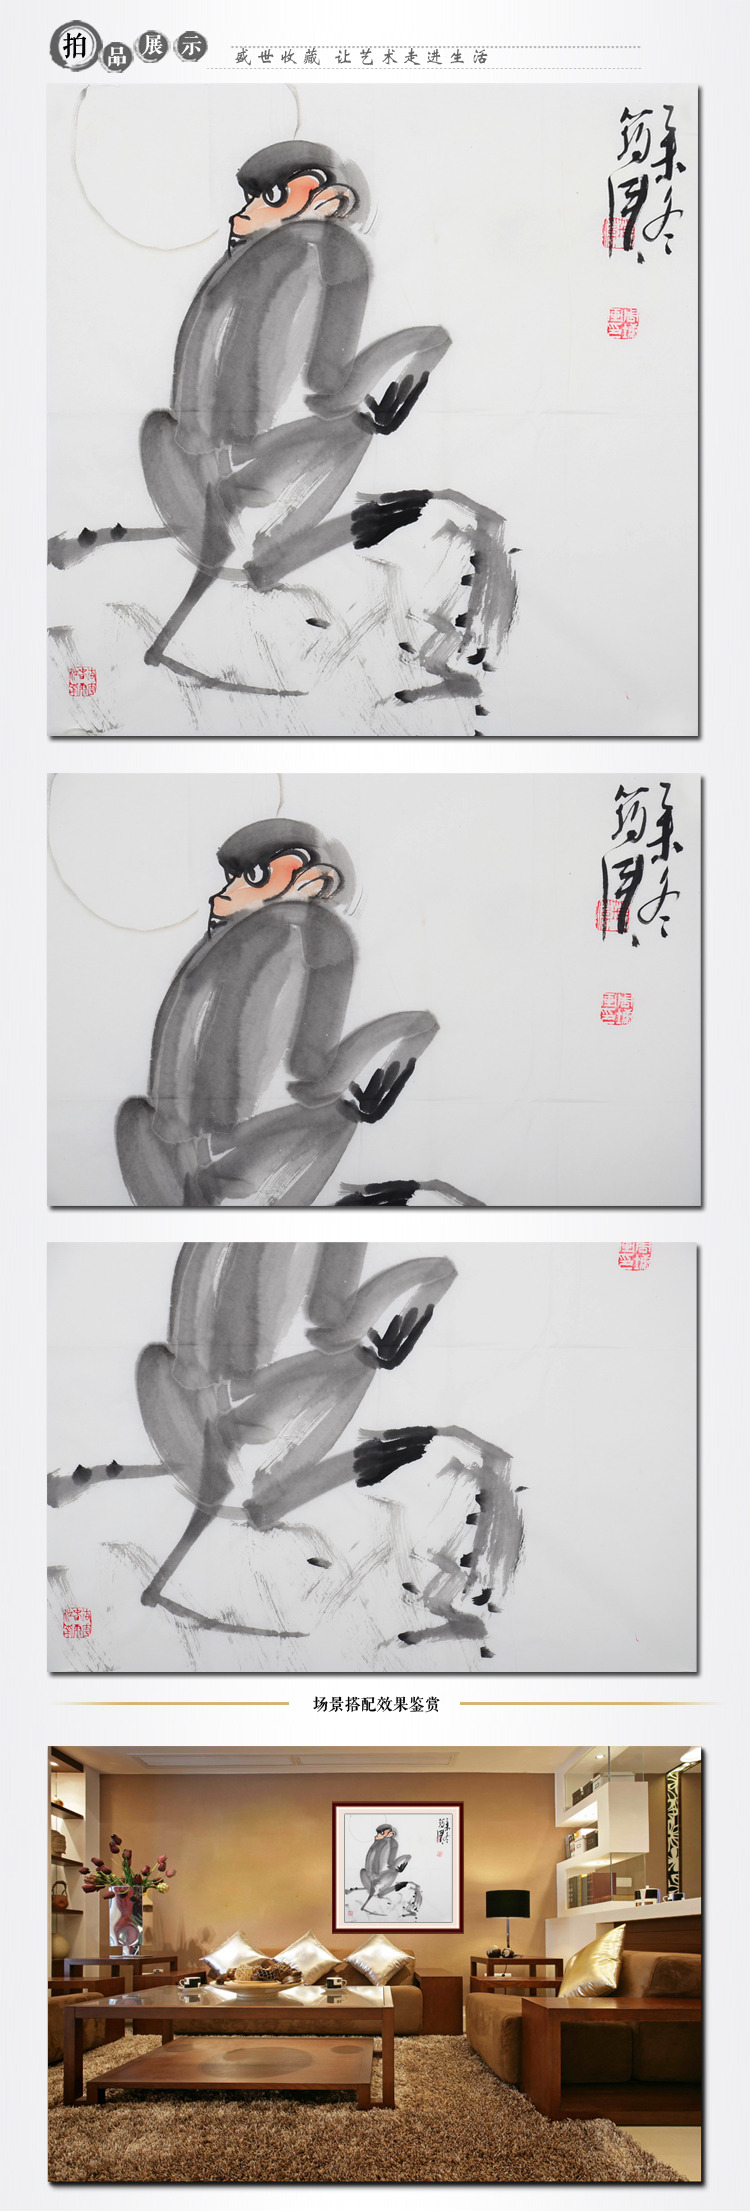 周墉《神猴》传统水墨 写意动物